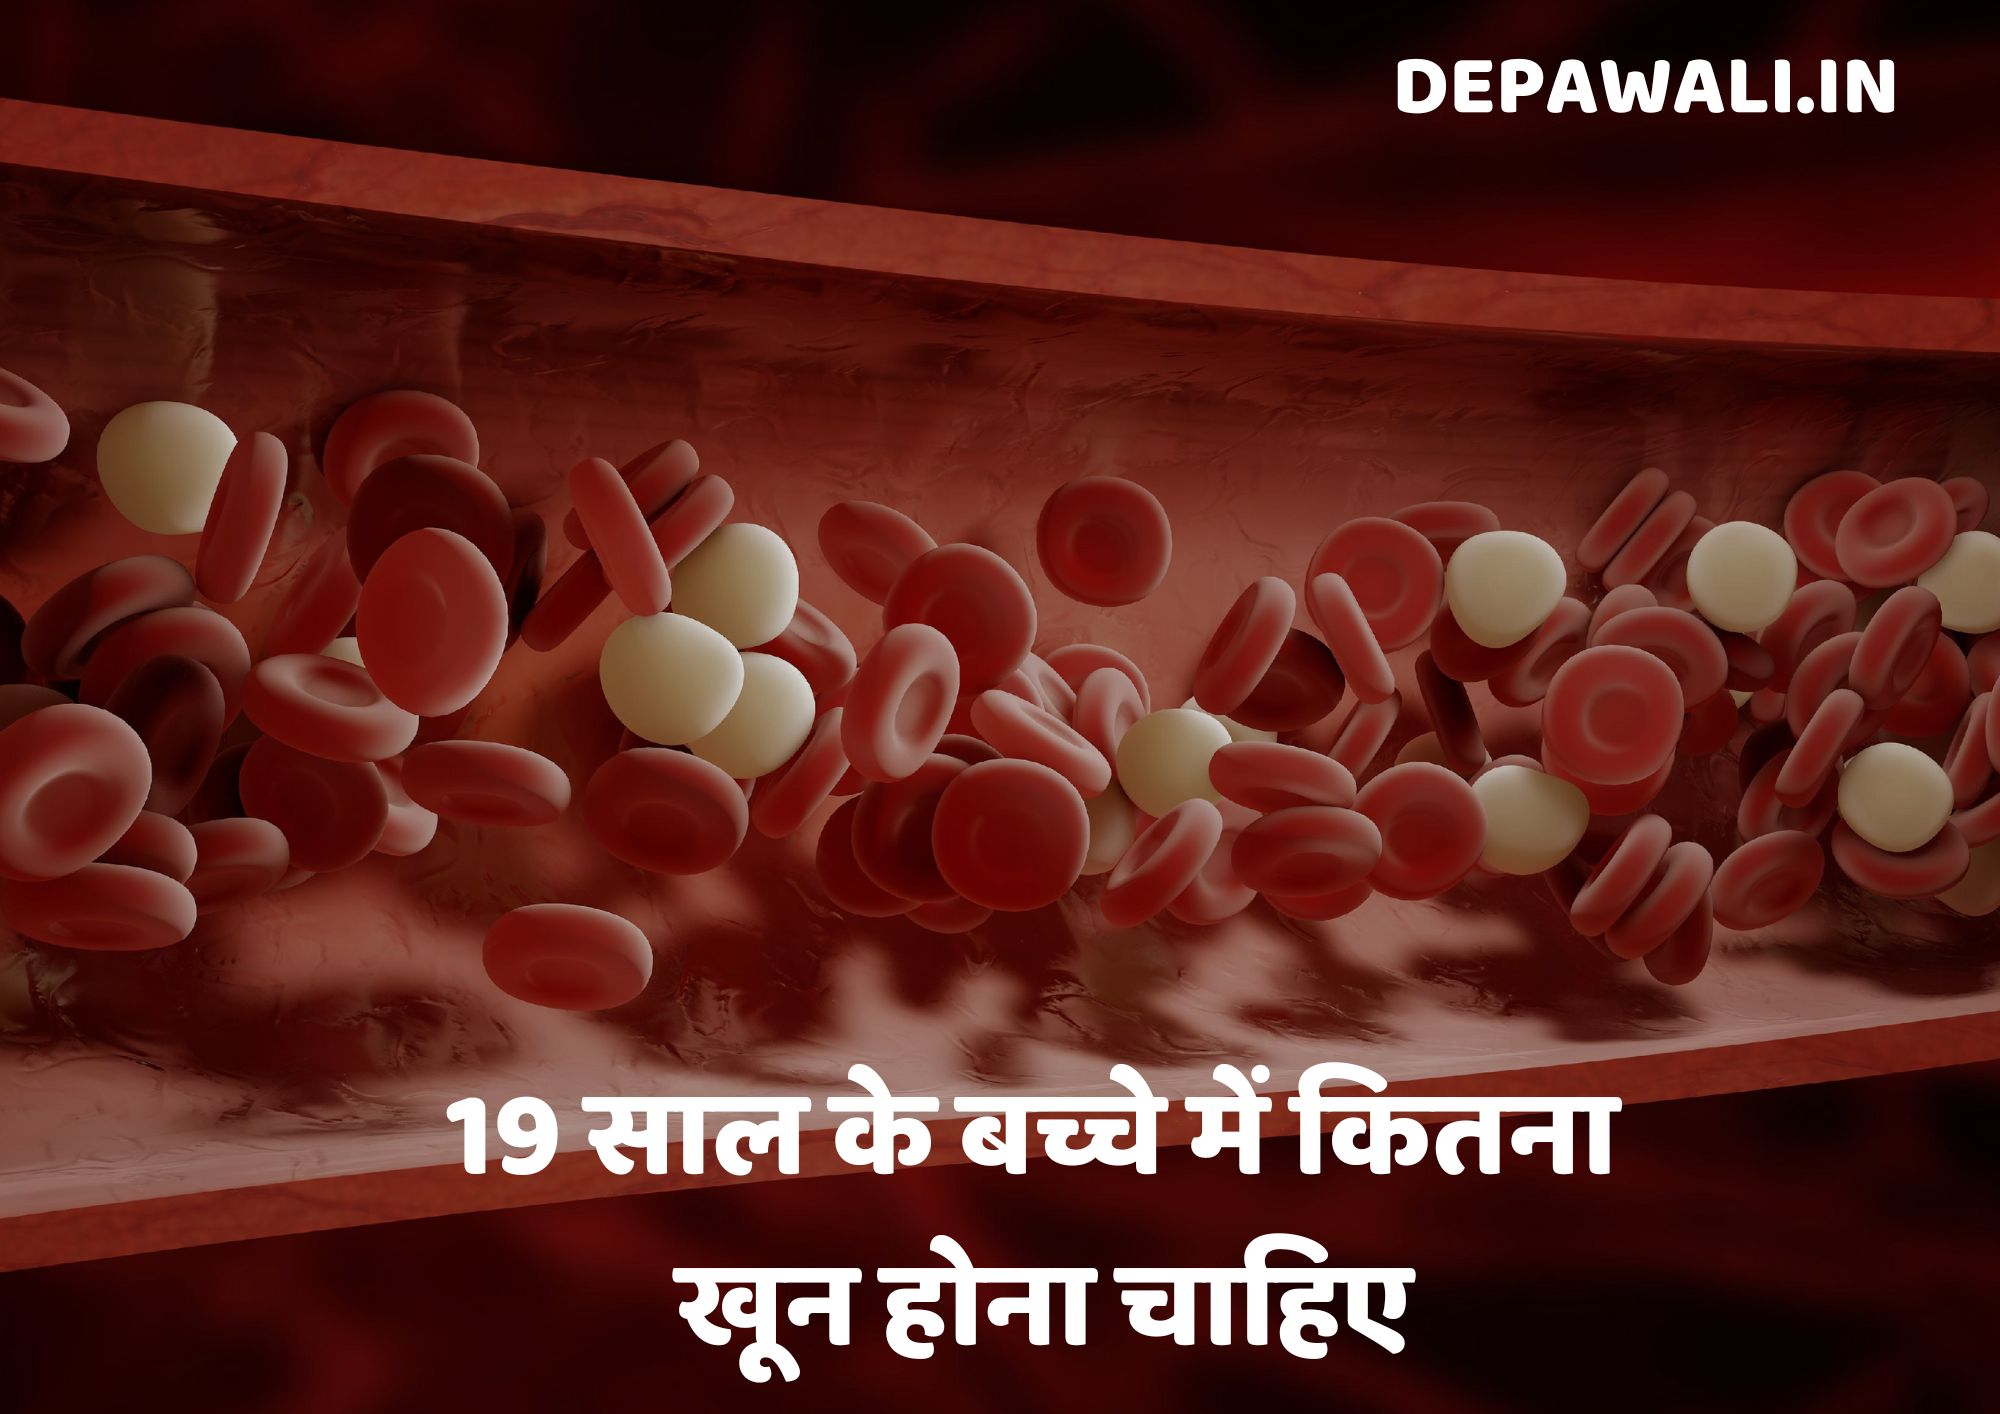 19 साल के बच्चे में कितना खून होना चाहिए, 3 साल के बच्चे में कितना खून होना चाहिए?